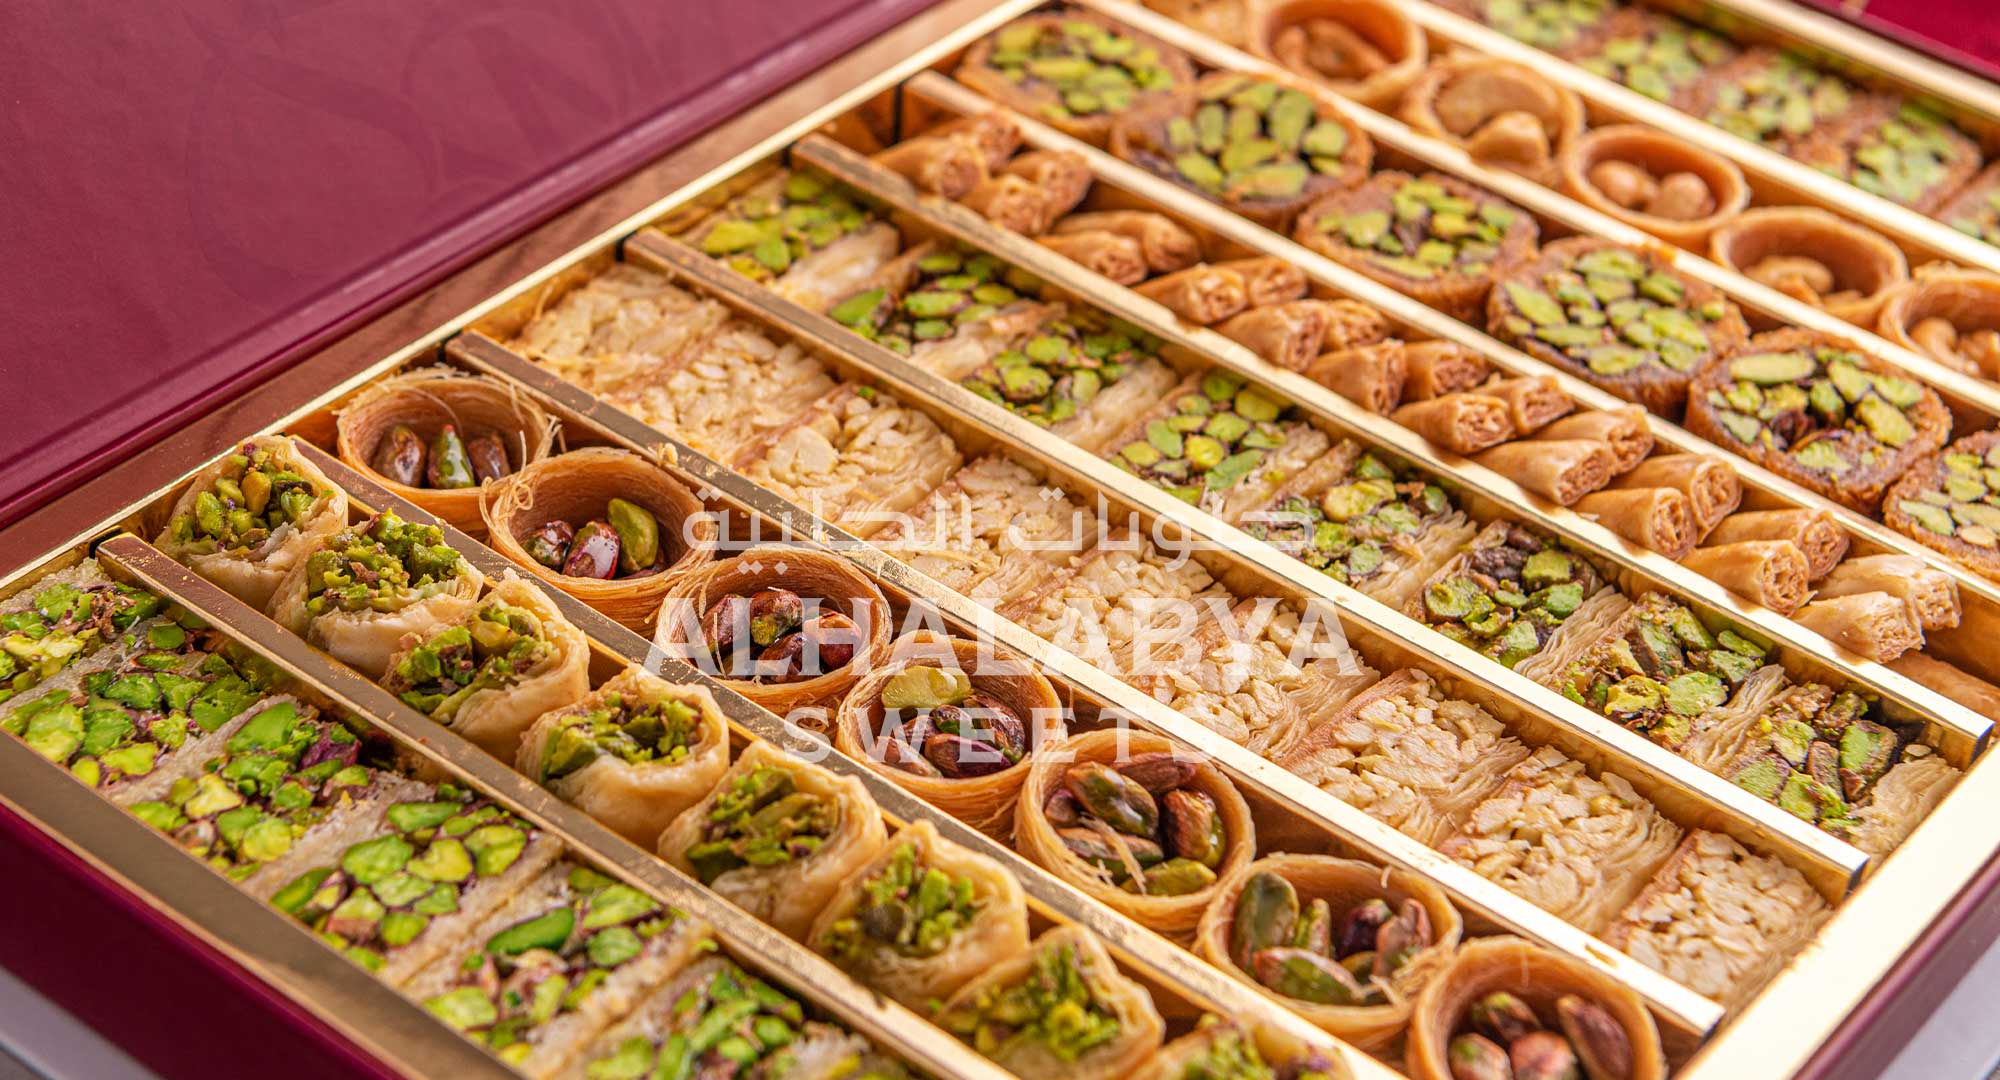 Best Arabic Baklava in the UAE